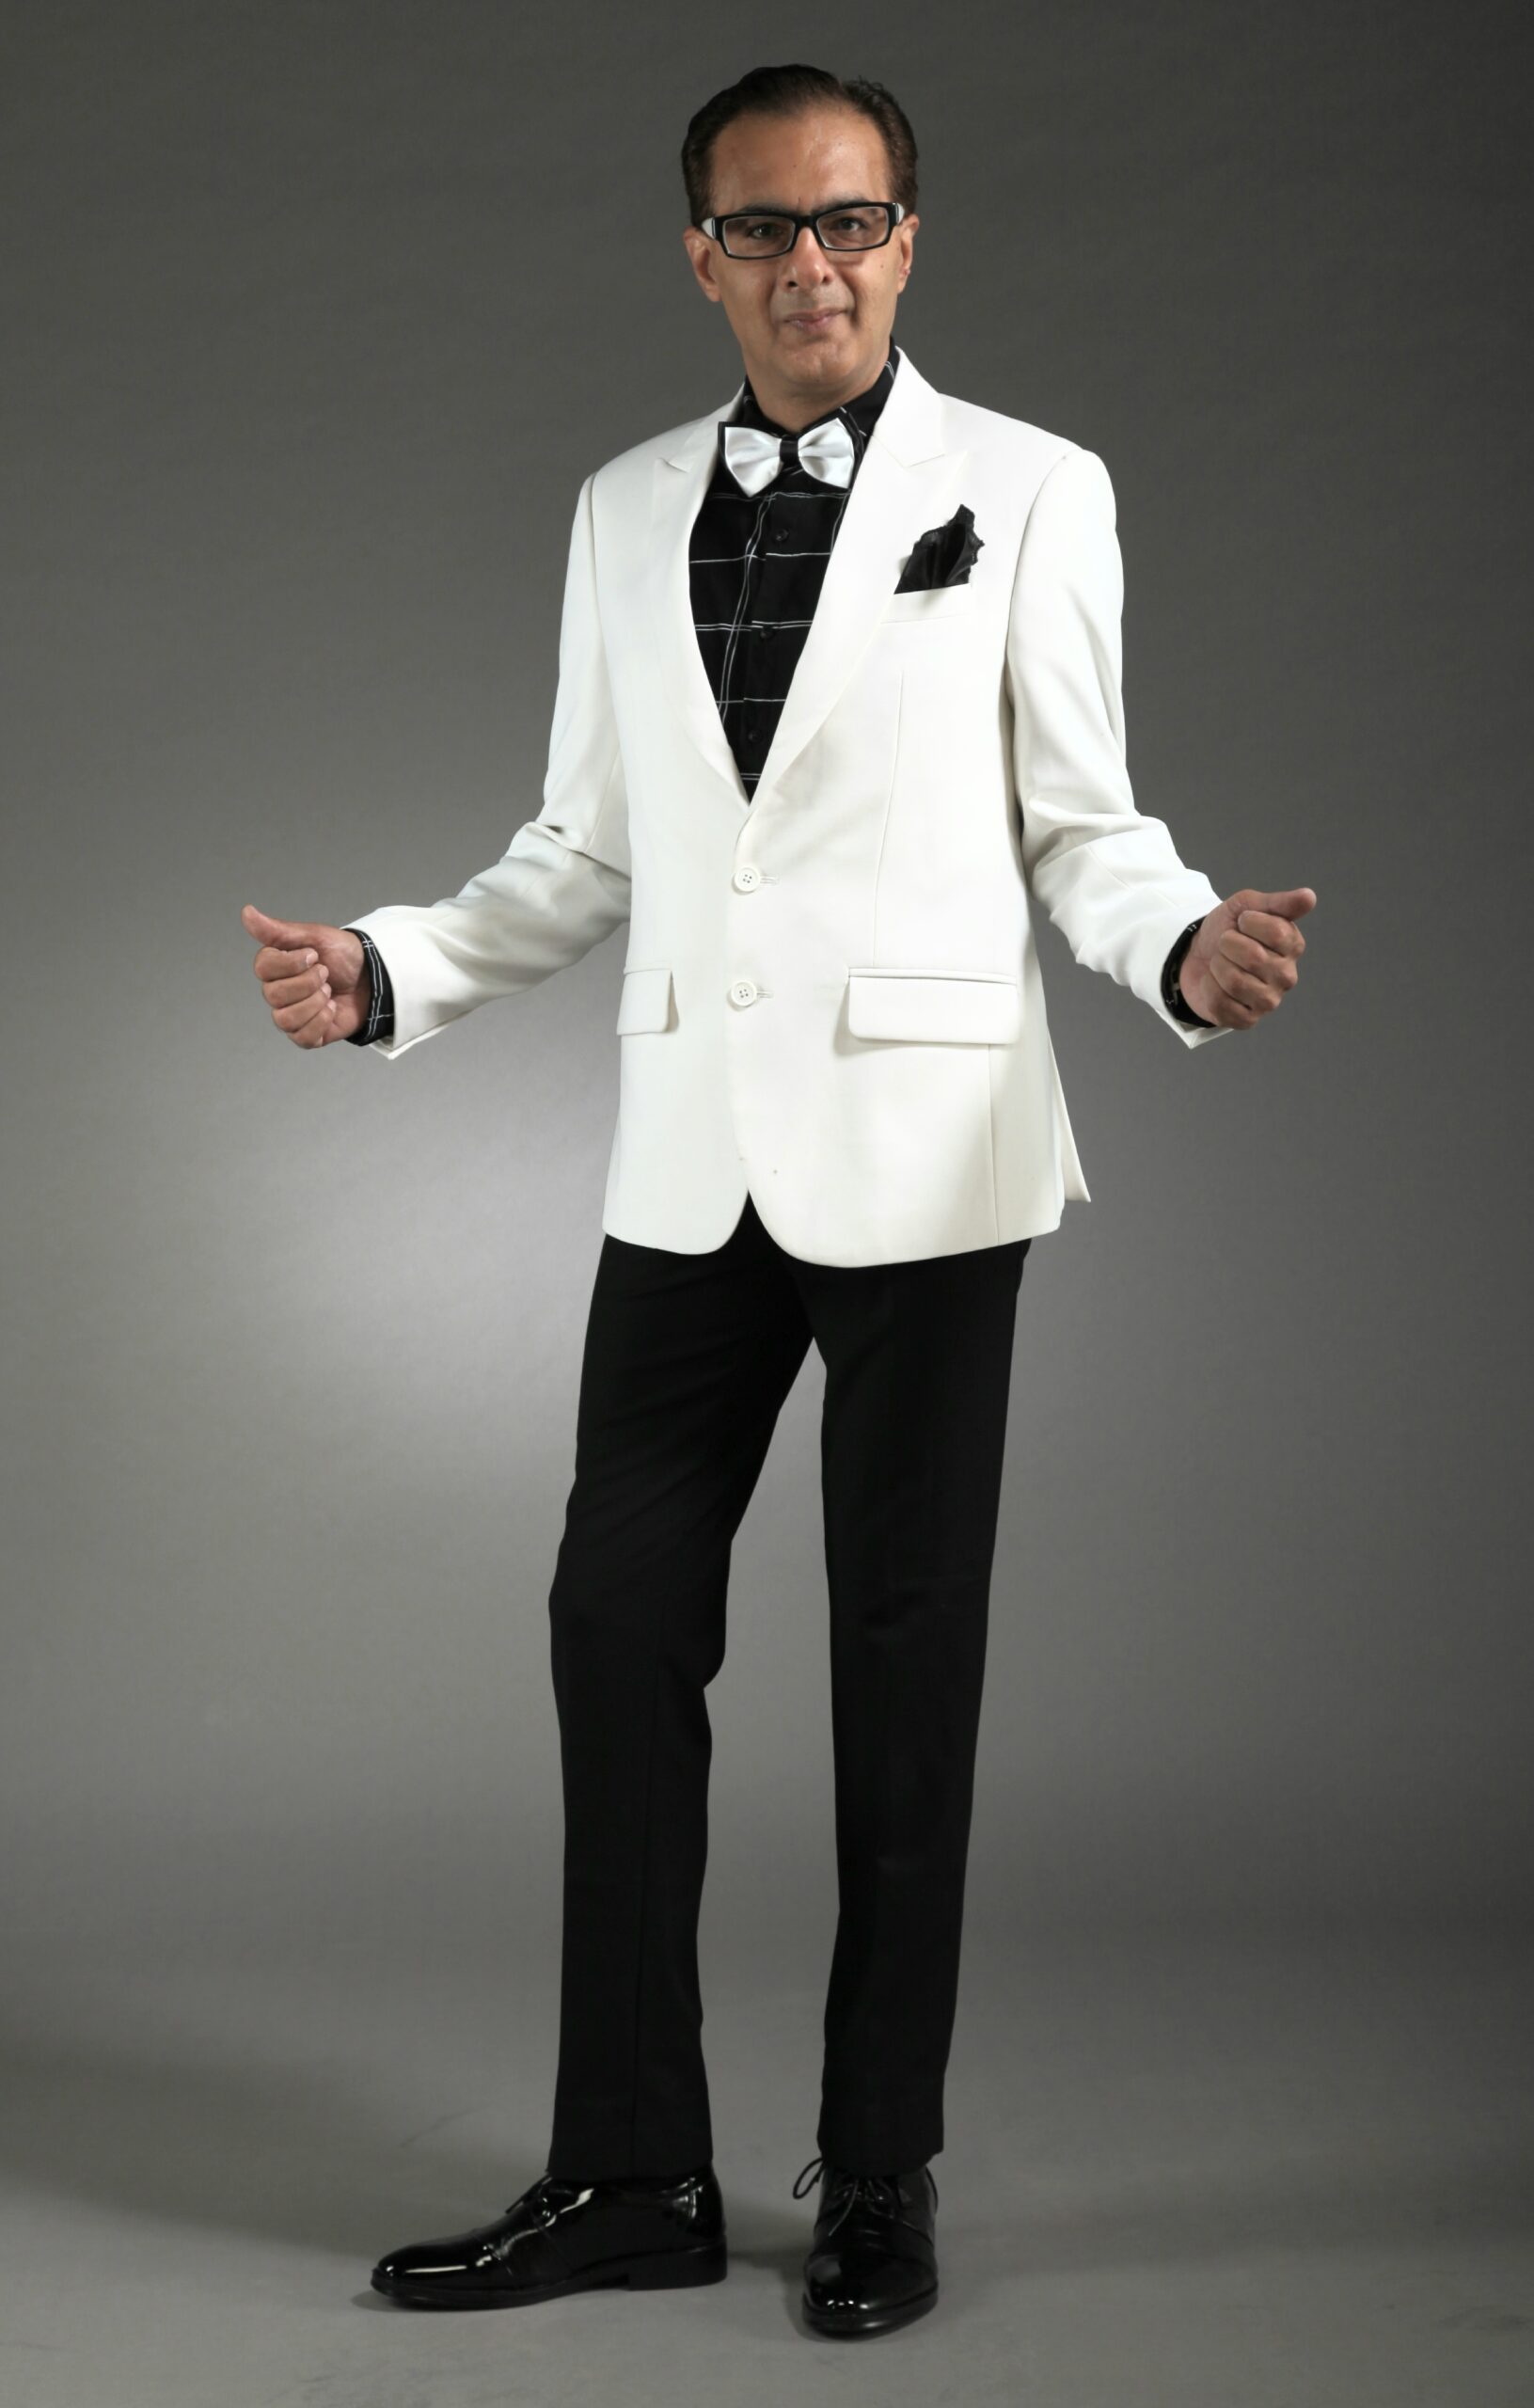 MST-5055-03-rent_rental_hire_tuxedo_suit_black_tie_suit_designer_suits_shop_tailor_tailors_singapore_wedding